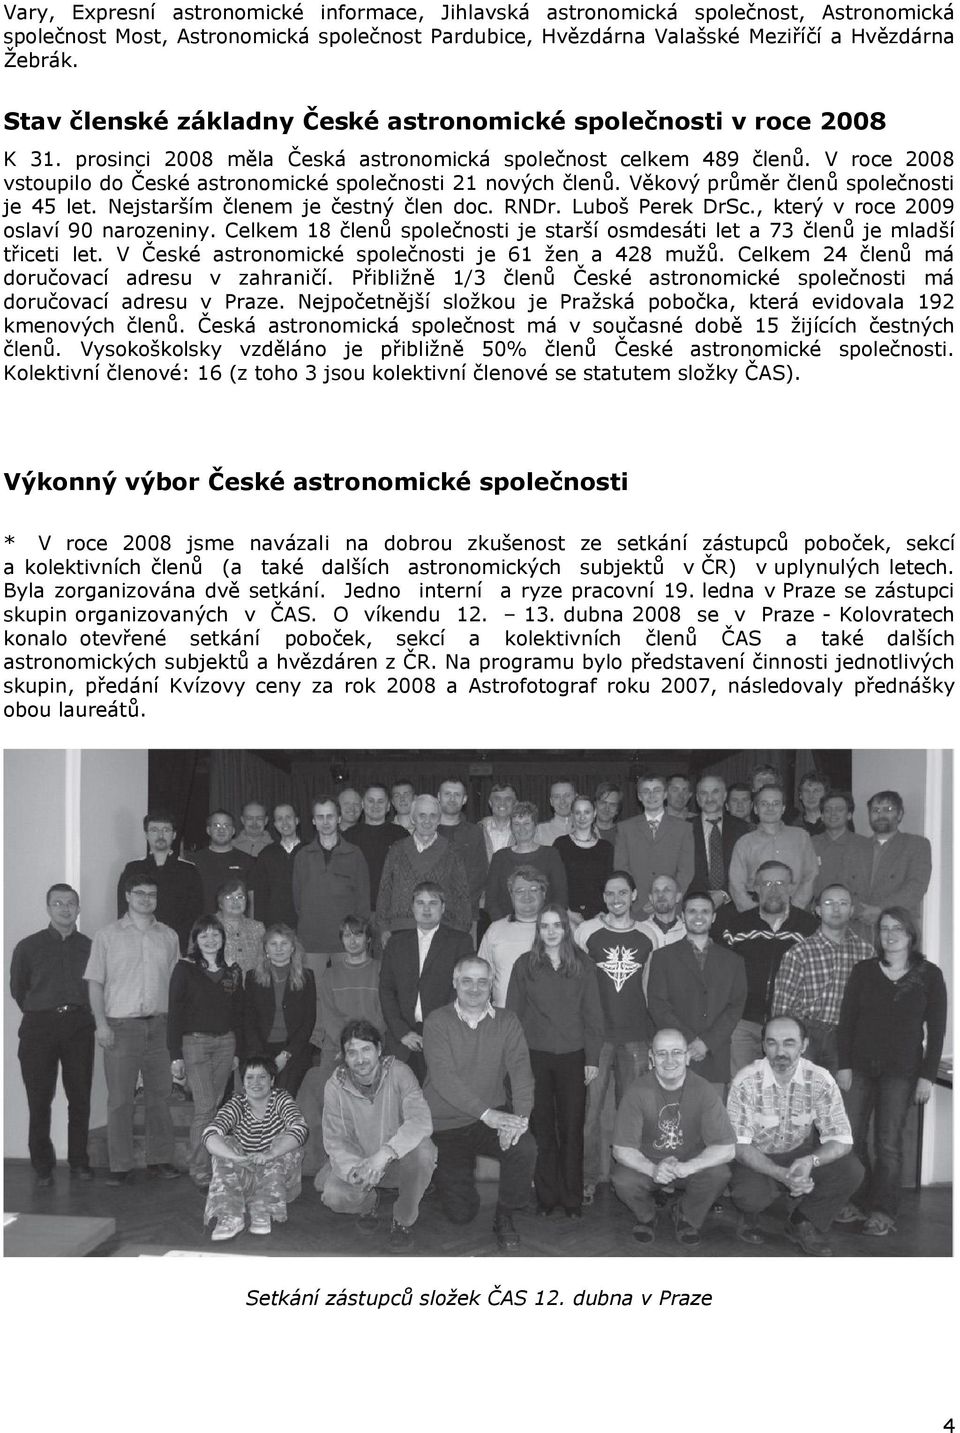 V roce 2008 vstoupilo do České astronomické společnosti 21 nových členů. Věkový průměr členů společnosti je 45 let. Nejstarším členem je čestný člen doc. RNDr. Luboš Perek DrSc.